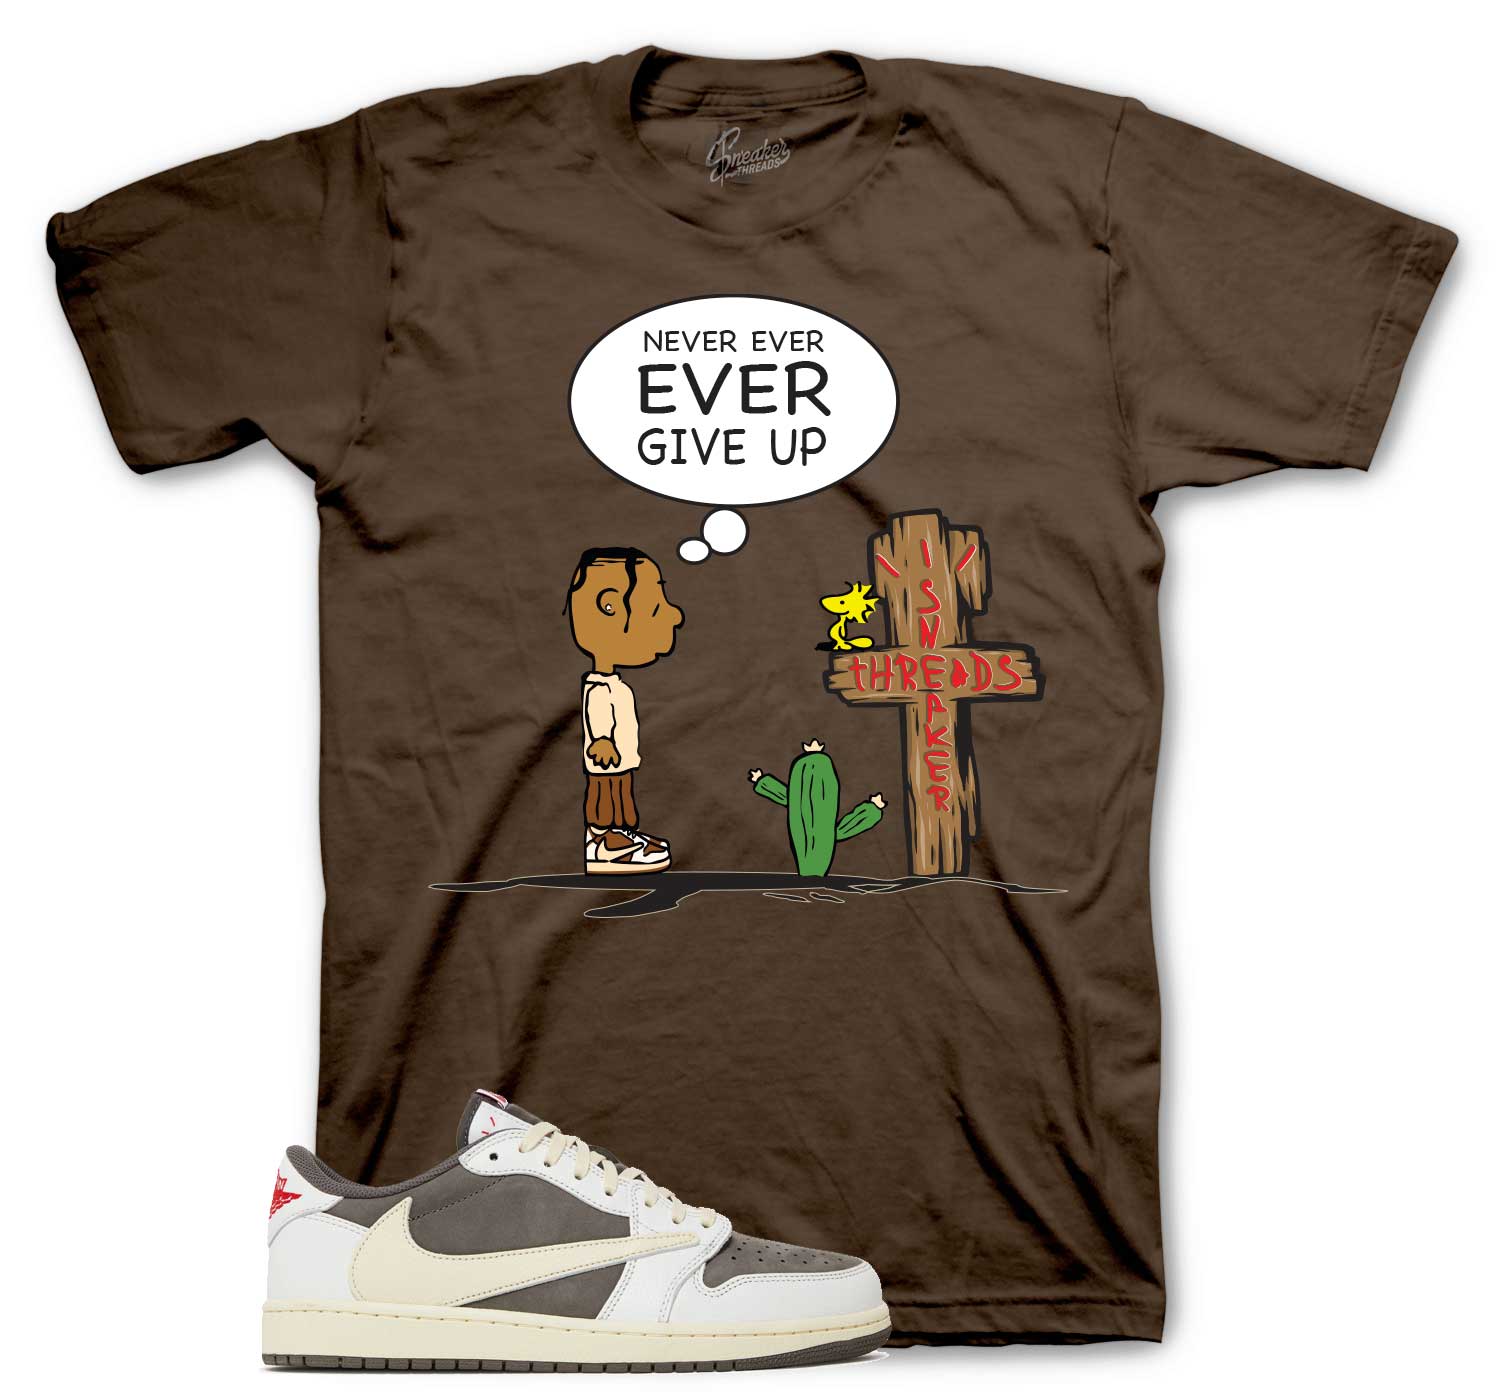 Retro 1 Reverse Mocha Shirt - Never Ever - Brown